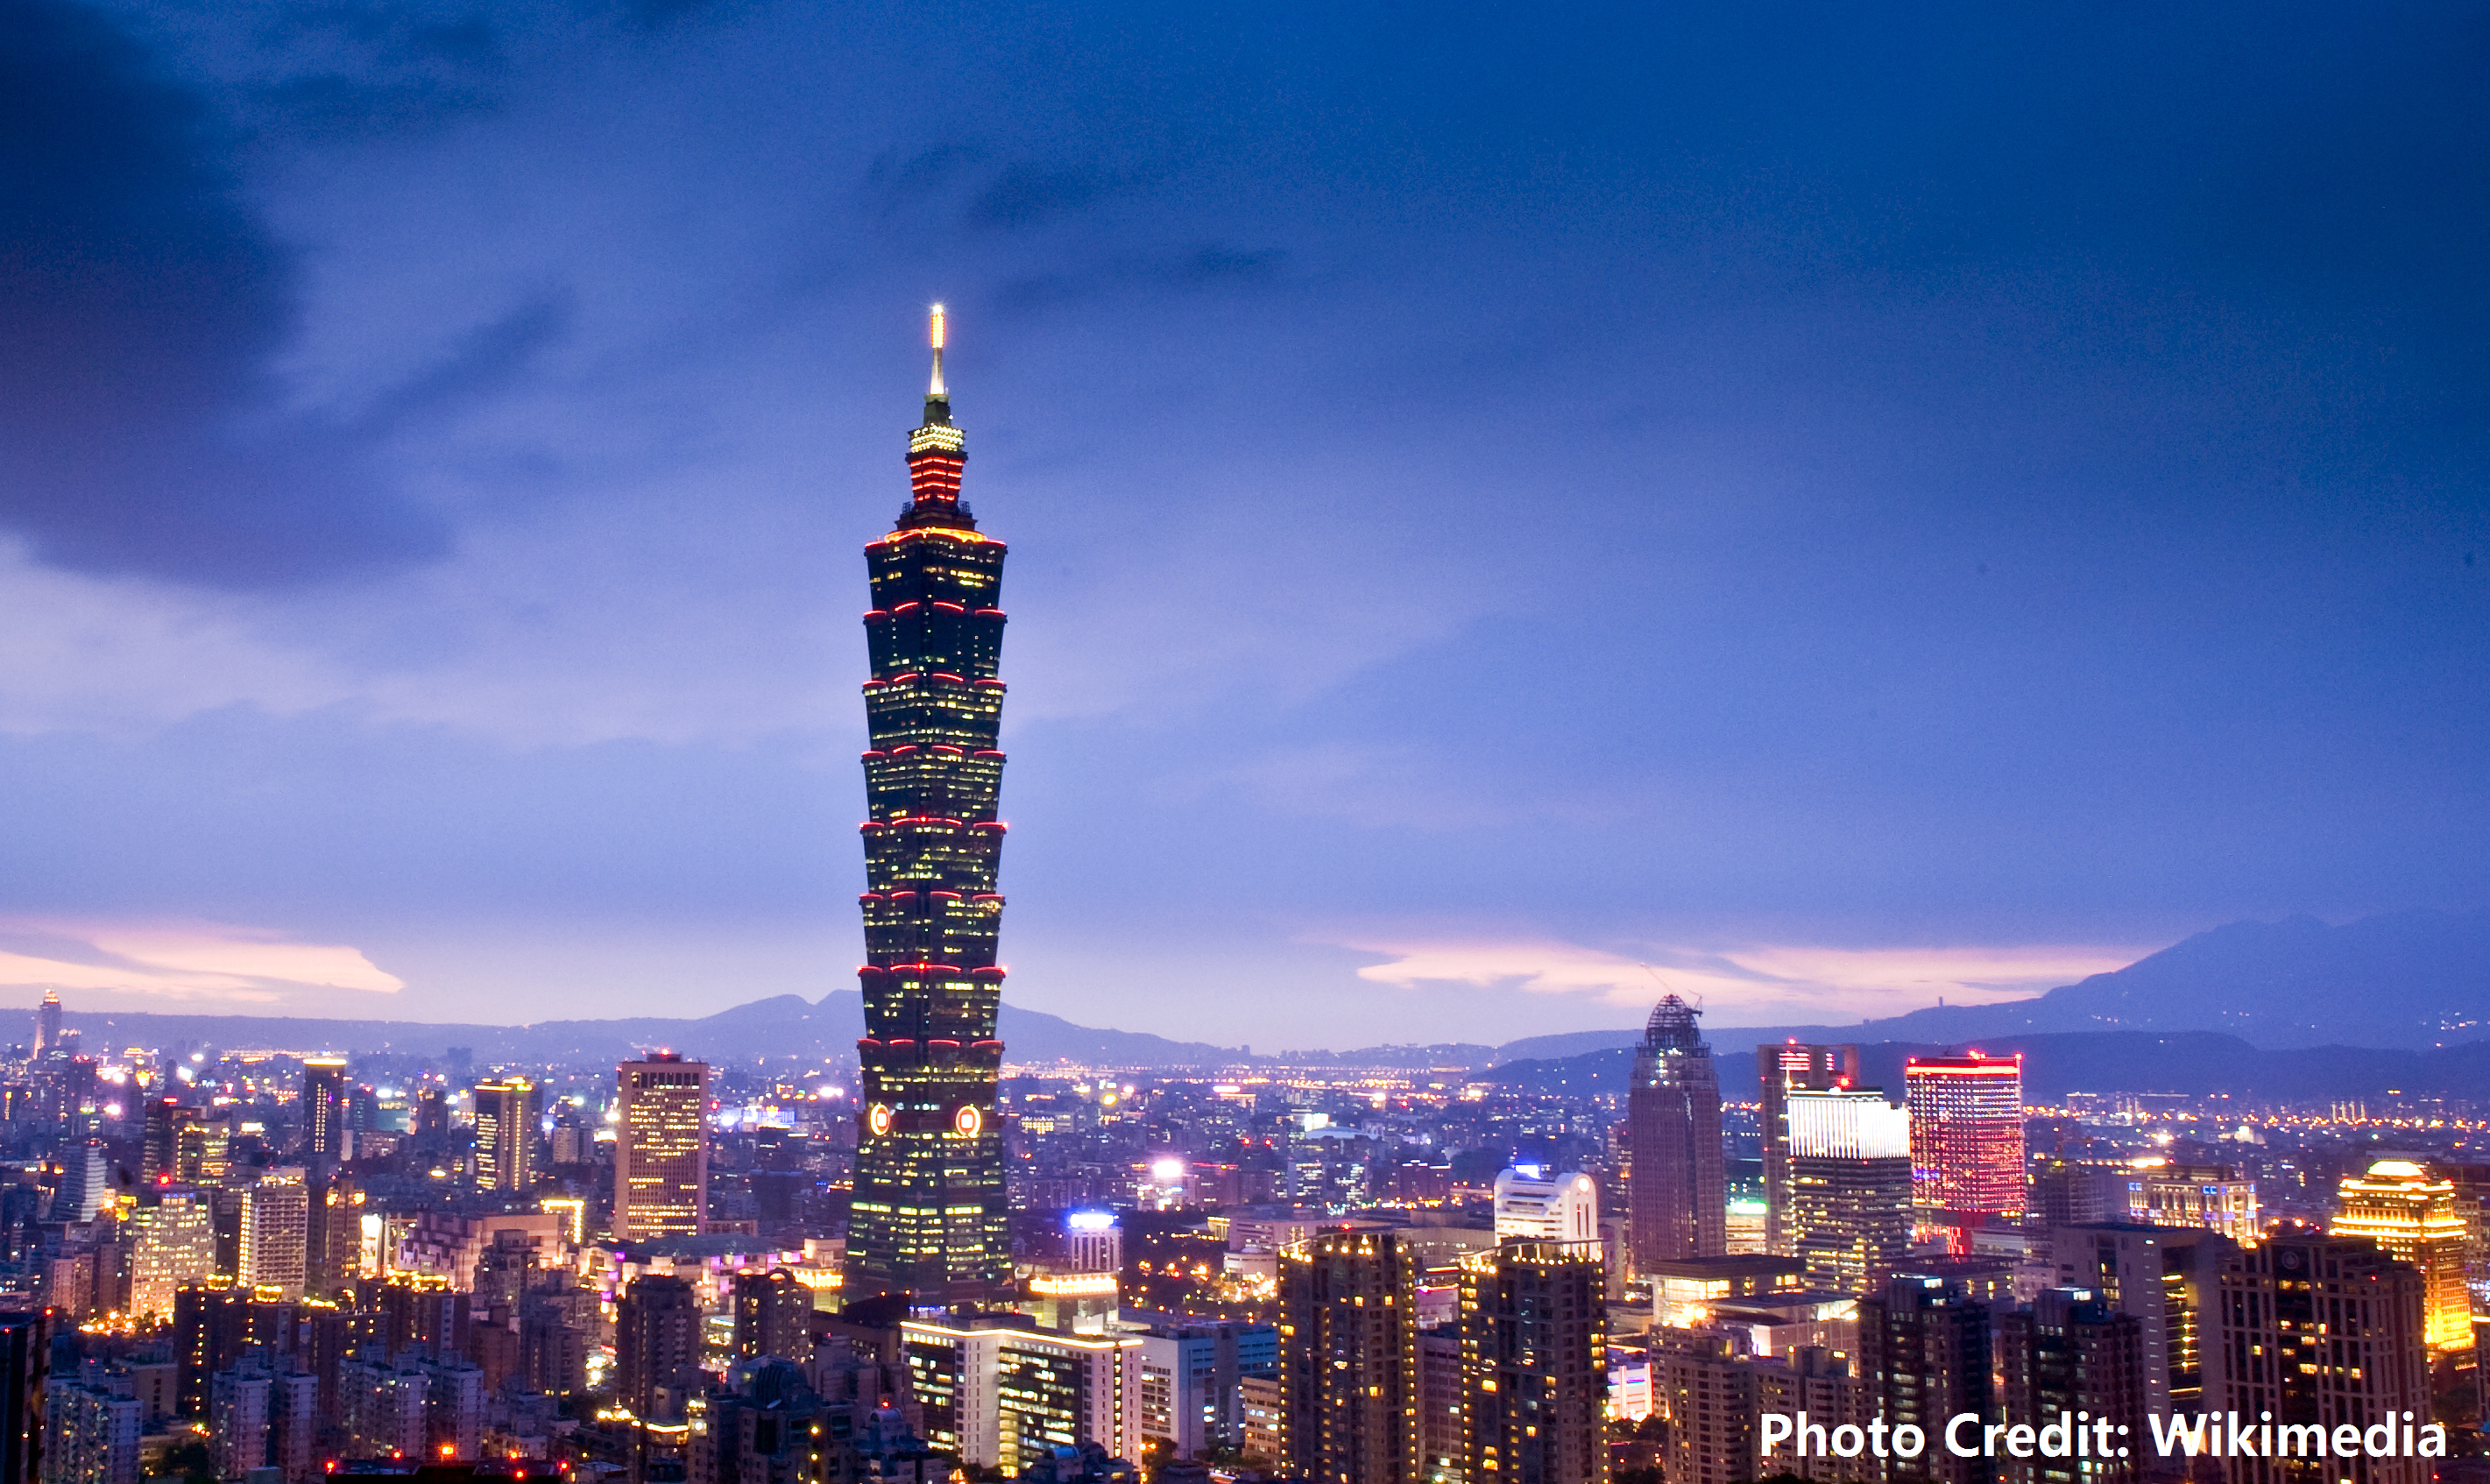 從矽谷到台北，「AAMA台北搖籃計畫」幫助台灣新創成長